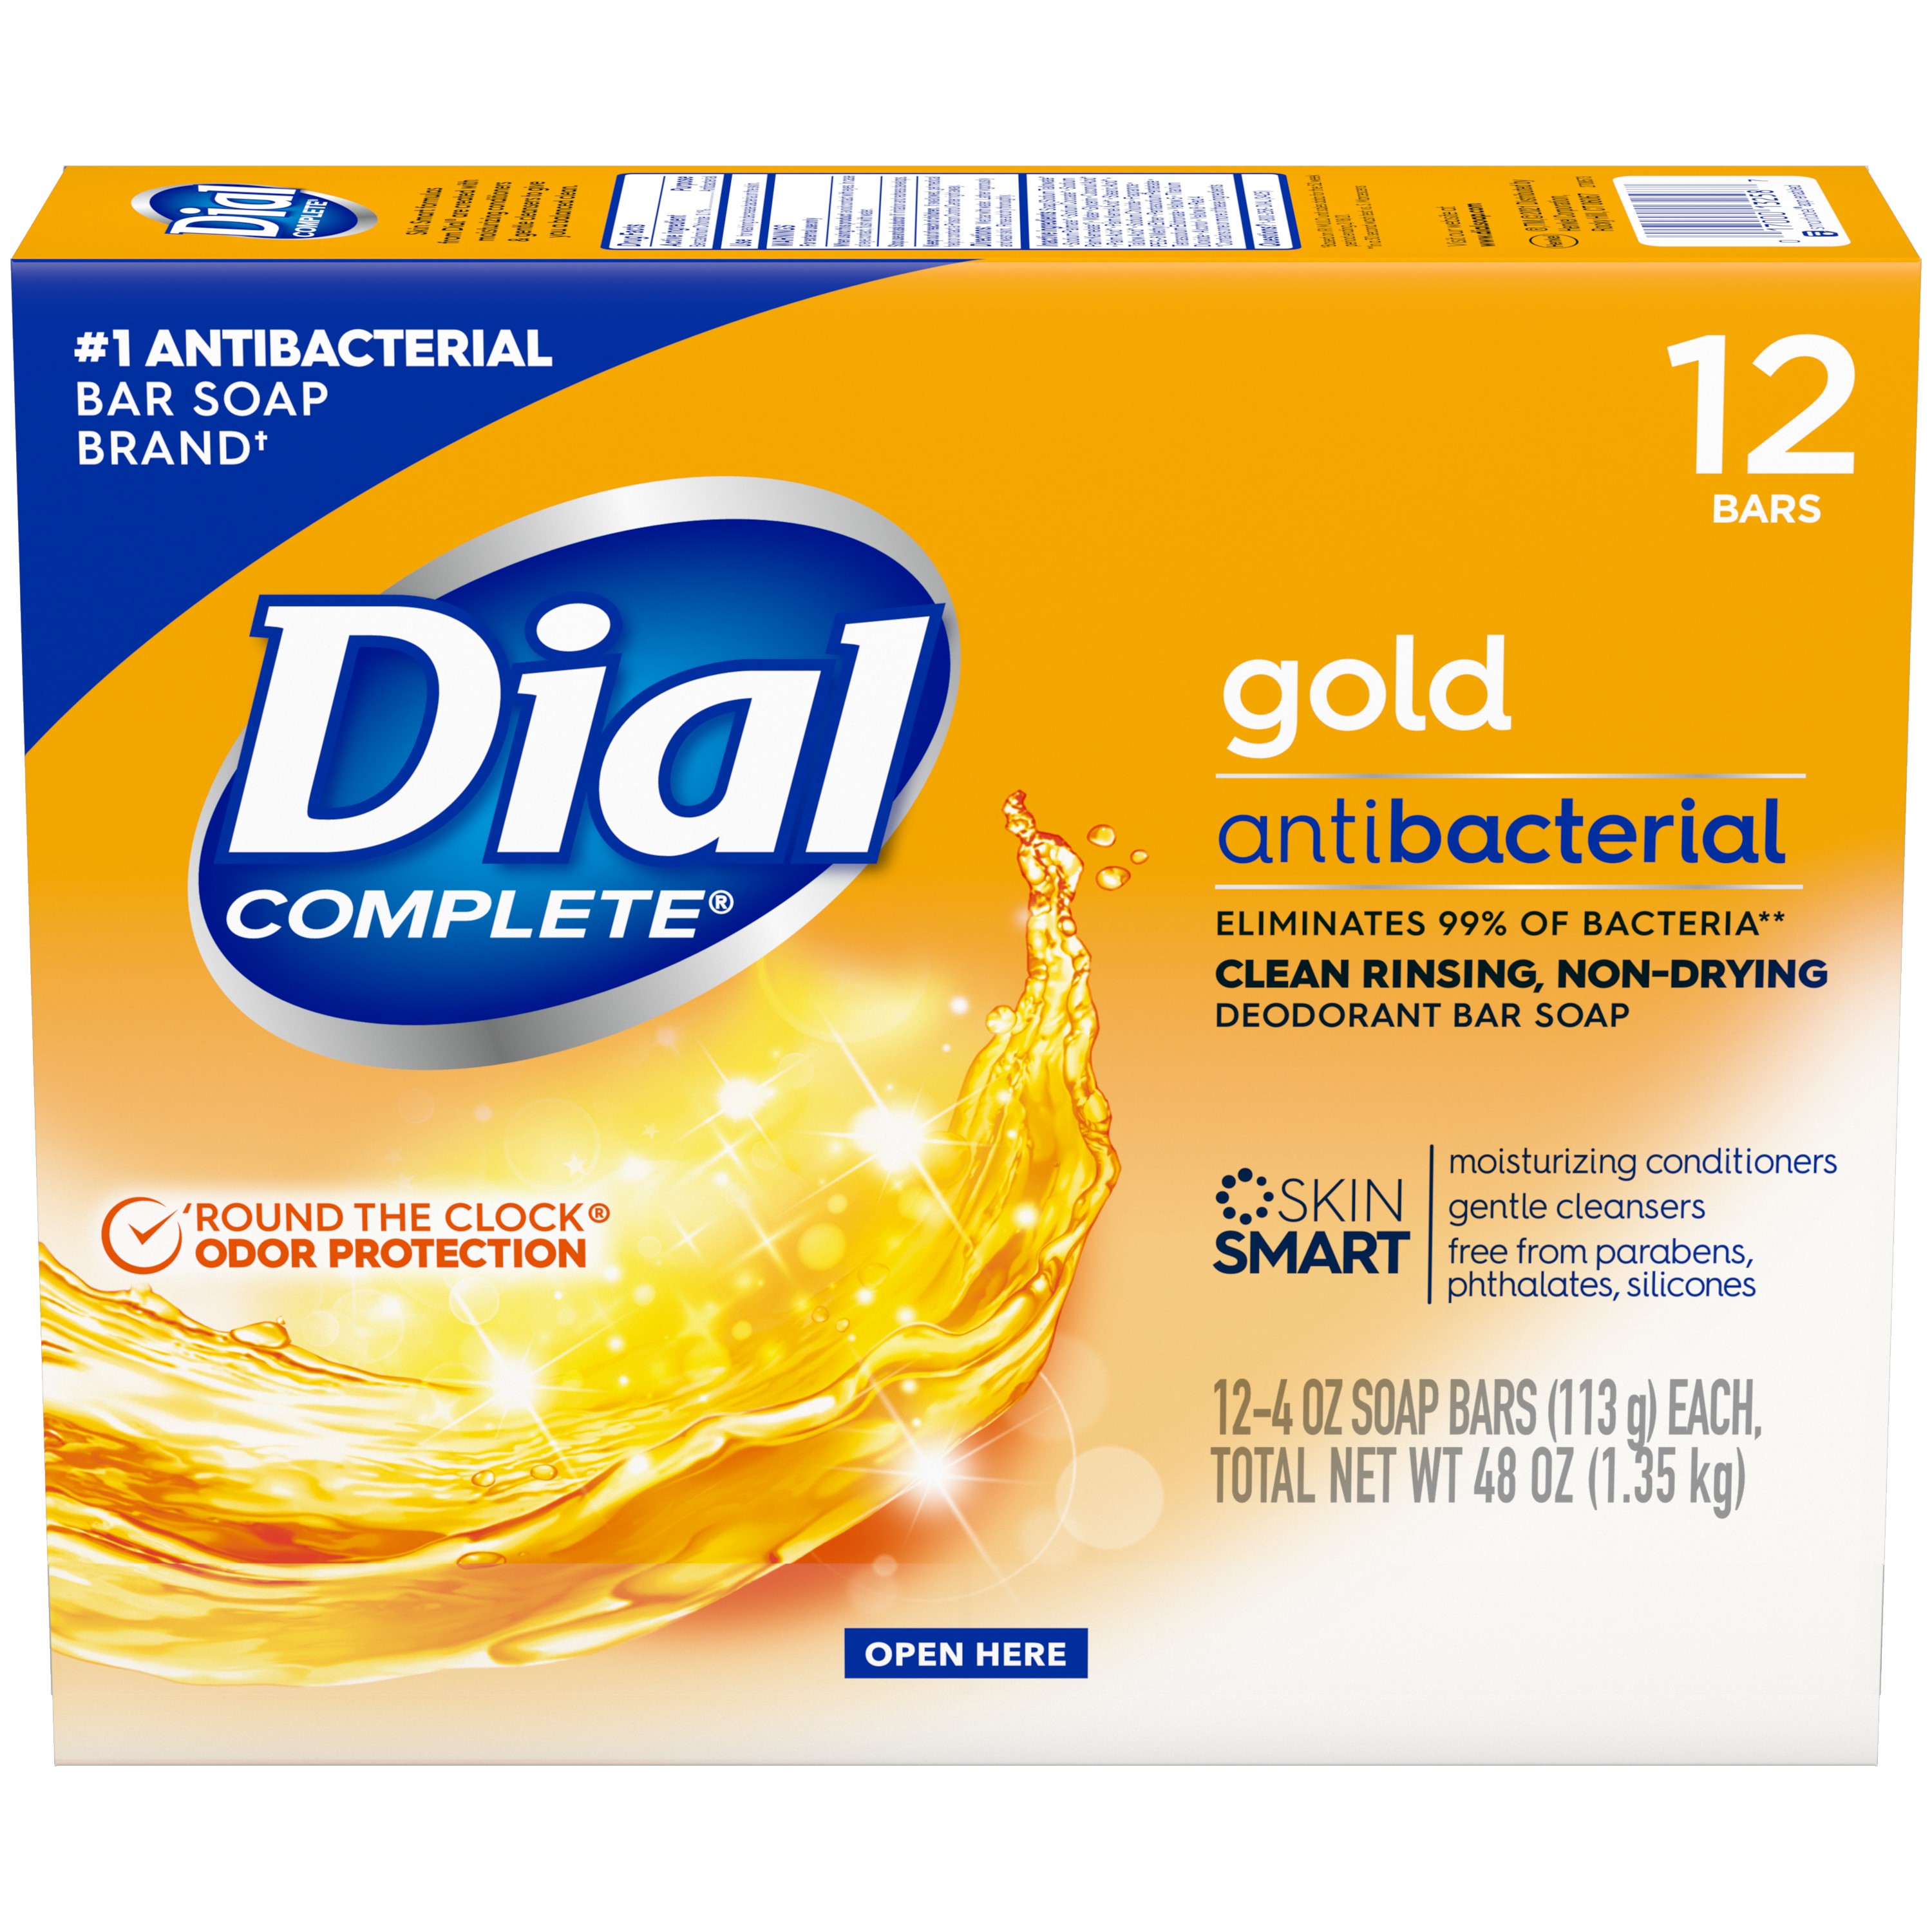 Dial Antibacterial Deodorant Bar Soap, Advanced Clean, Gold, 4 oz, 12 Bars - image 2 of 10